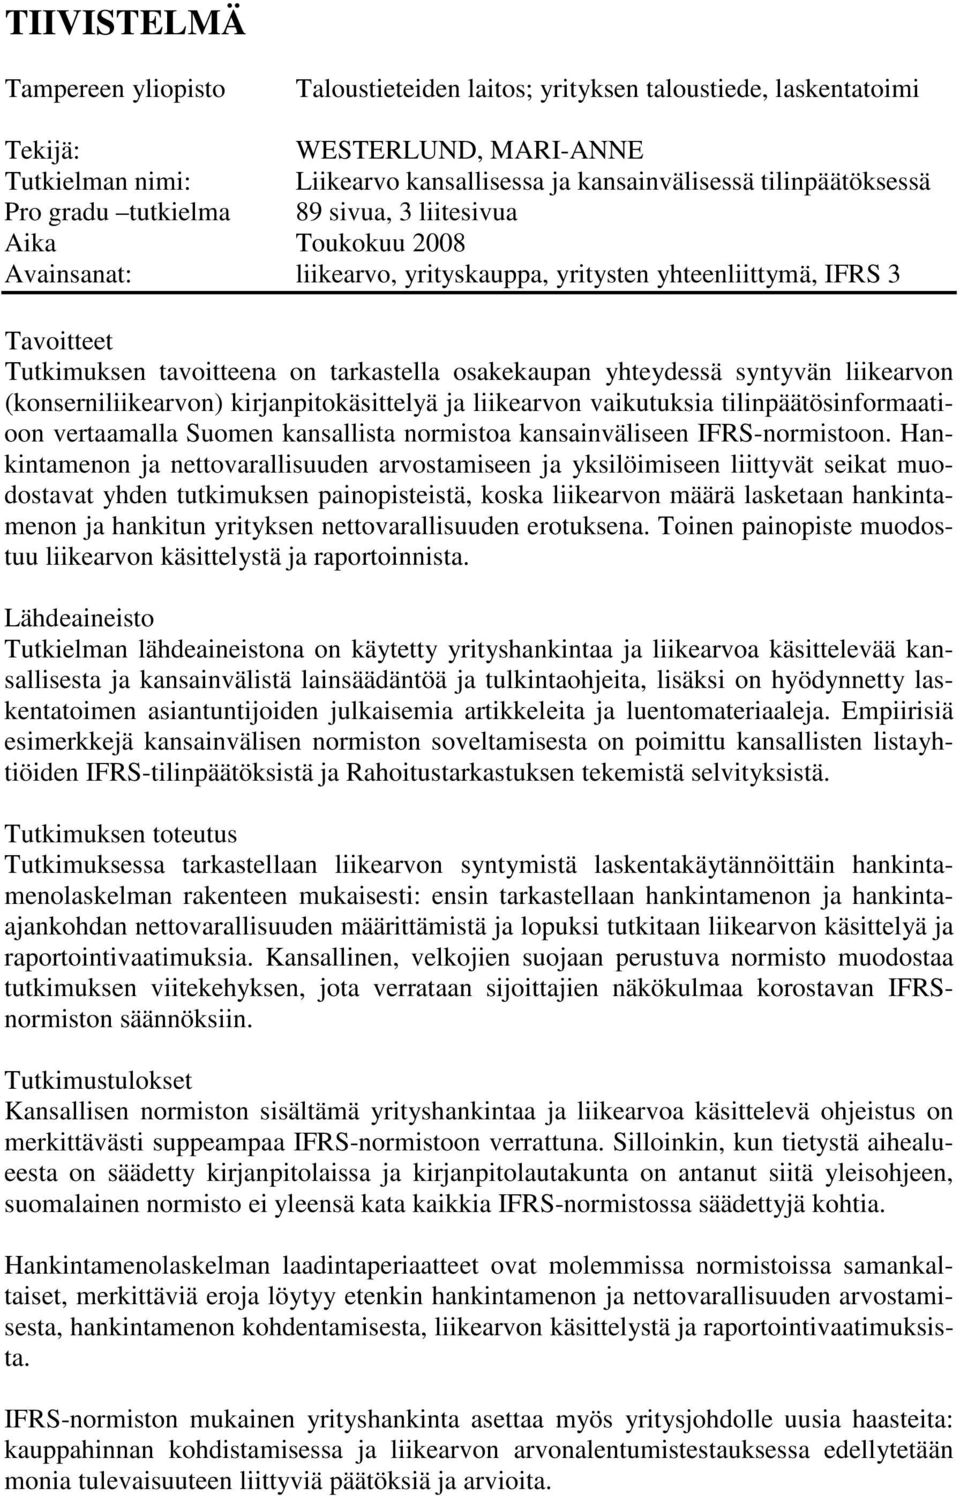 osakekaupan yhteydessä syntyvän liikearvon (konserniliikearvon) kirjanpitokäsittelyä ja liikearvon vaikutuksia tilinpäätösinformaatioon vertaamalla Suomen kansallista normistoa kansainväliseen